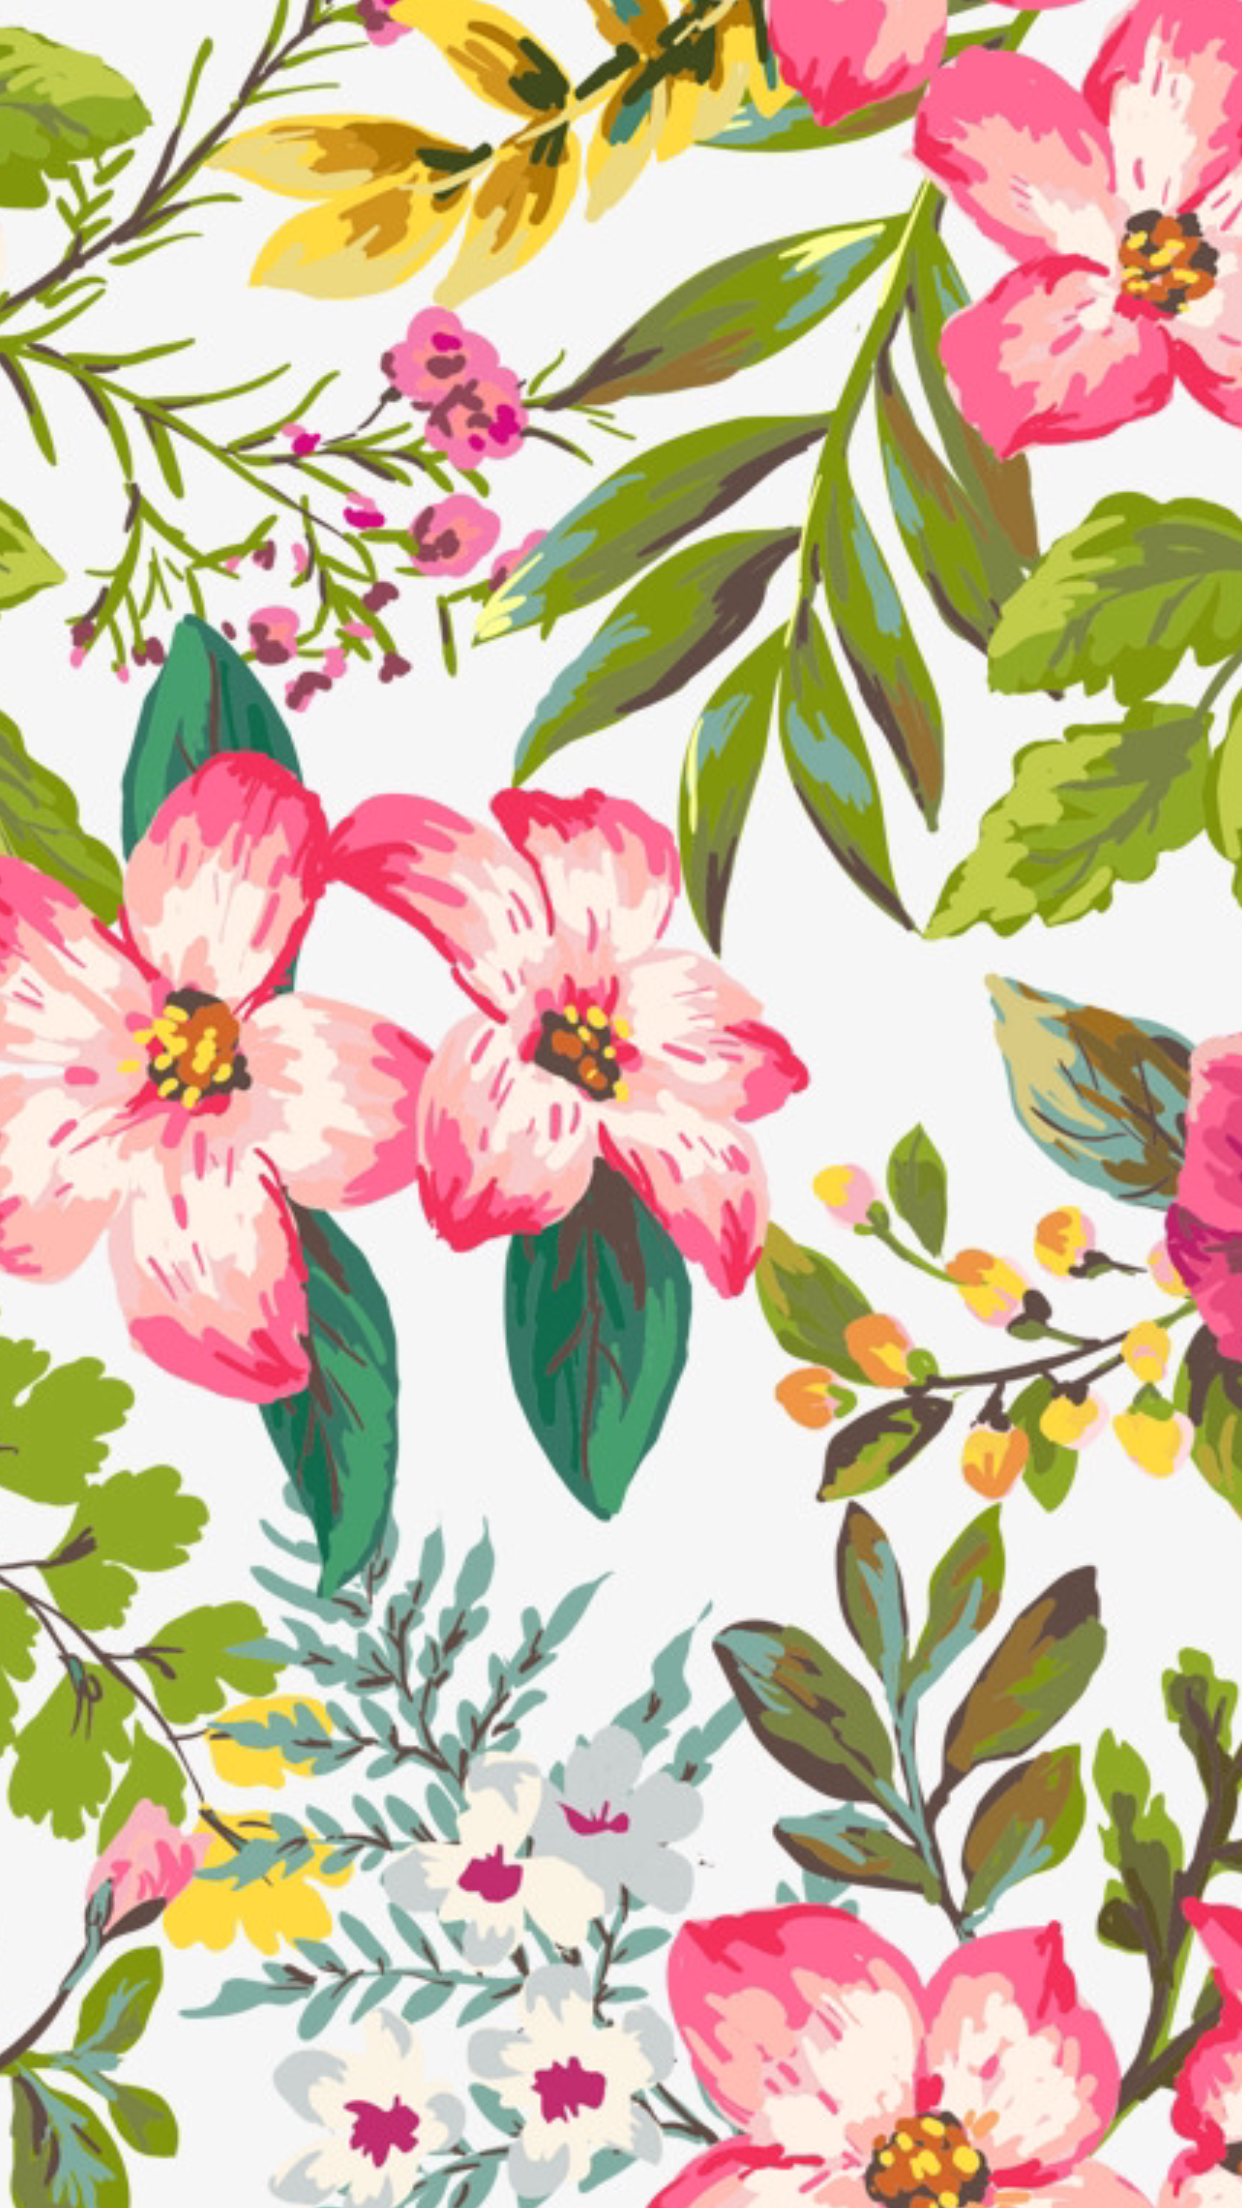 Wallpaper Flowers. Flower wallpaper, Floral wallpaper, Cute summer wallpaper